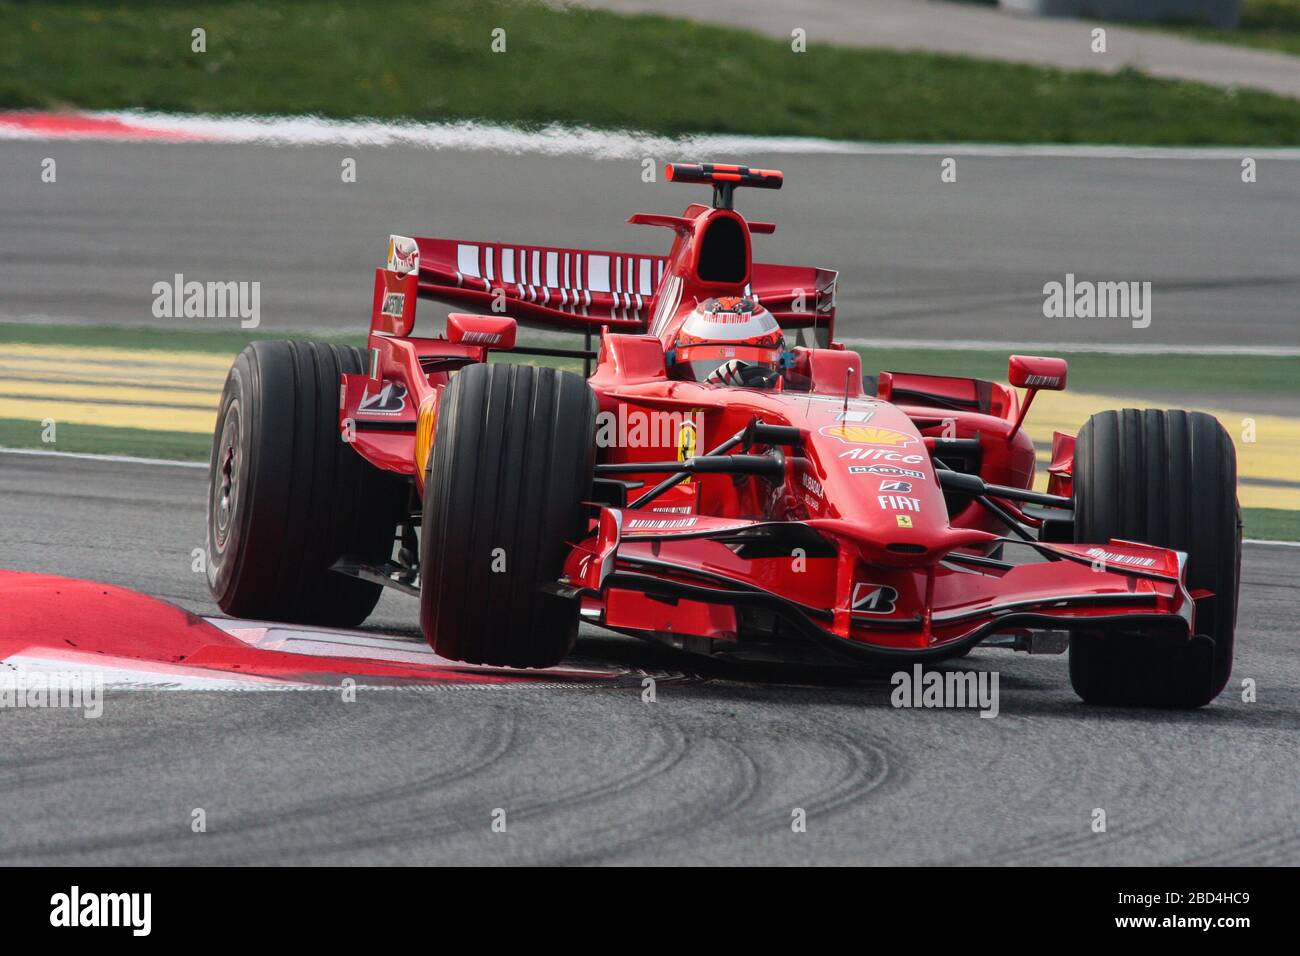 Kimi Raikkonen, Ferrari F2008, F1 test 2008, Circuit de Catalunya, Montmelò Stock Photo